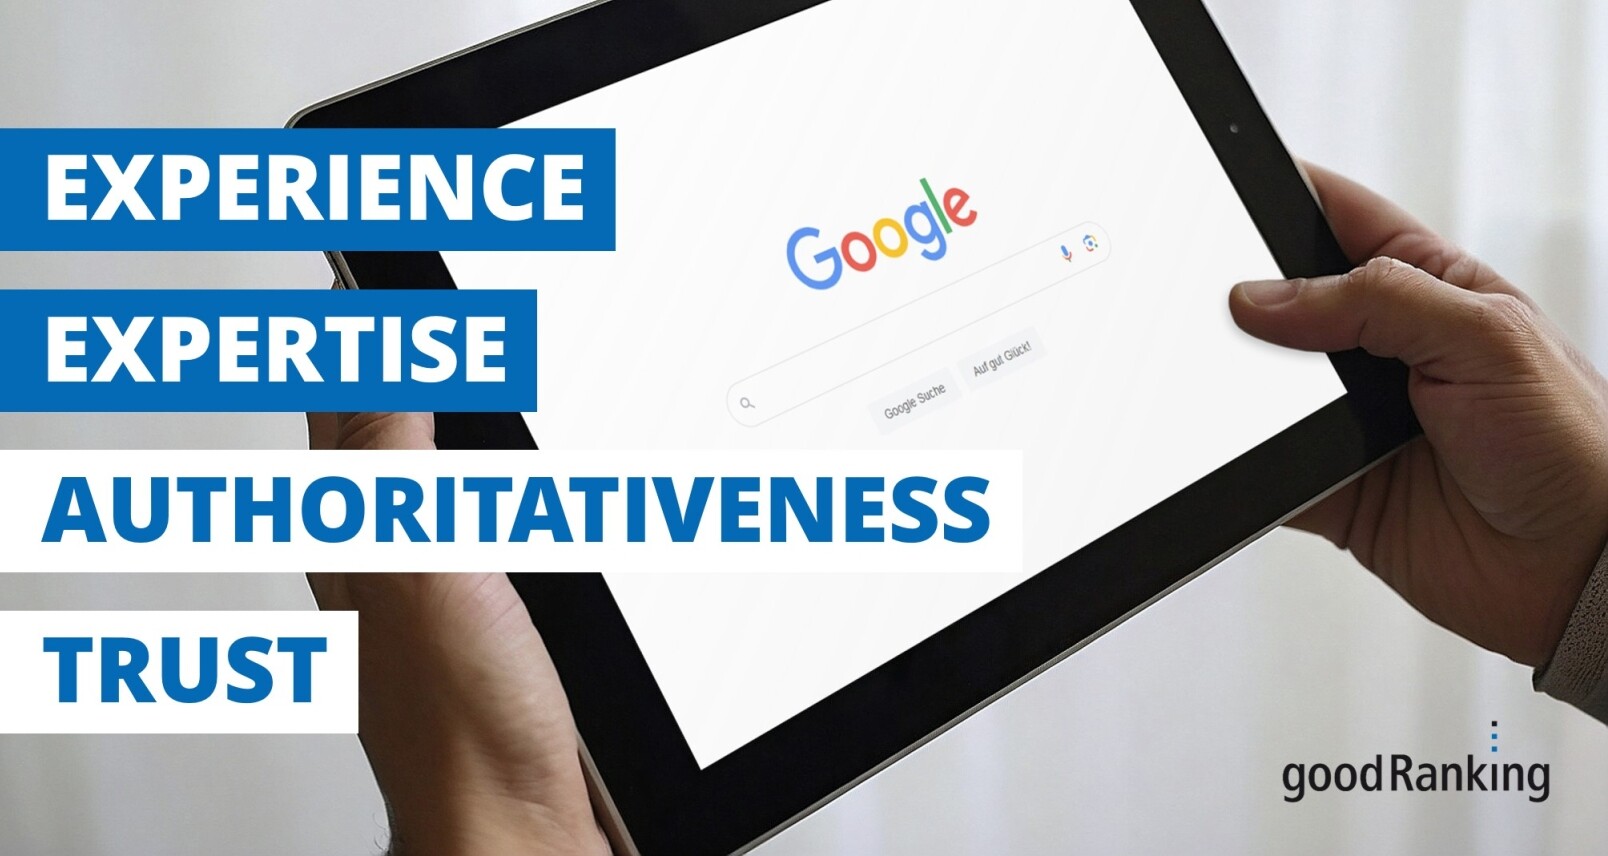 Nahaufnahme von einem Tablet mit der geöffneten Startseite von Google sowie dem übergelagertem Schriftzug "Experience, Expertise, Authoritativeness, Trust"